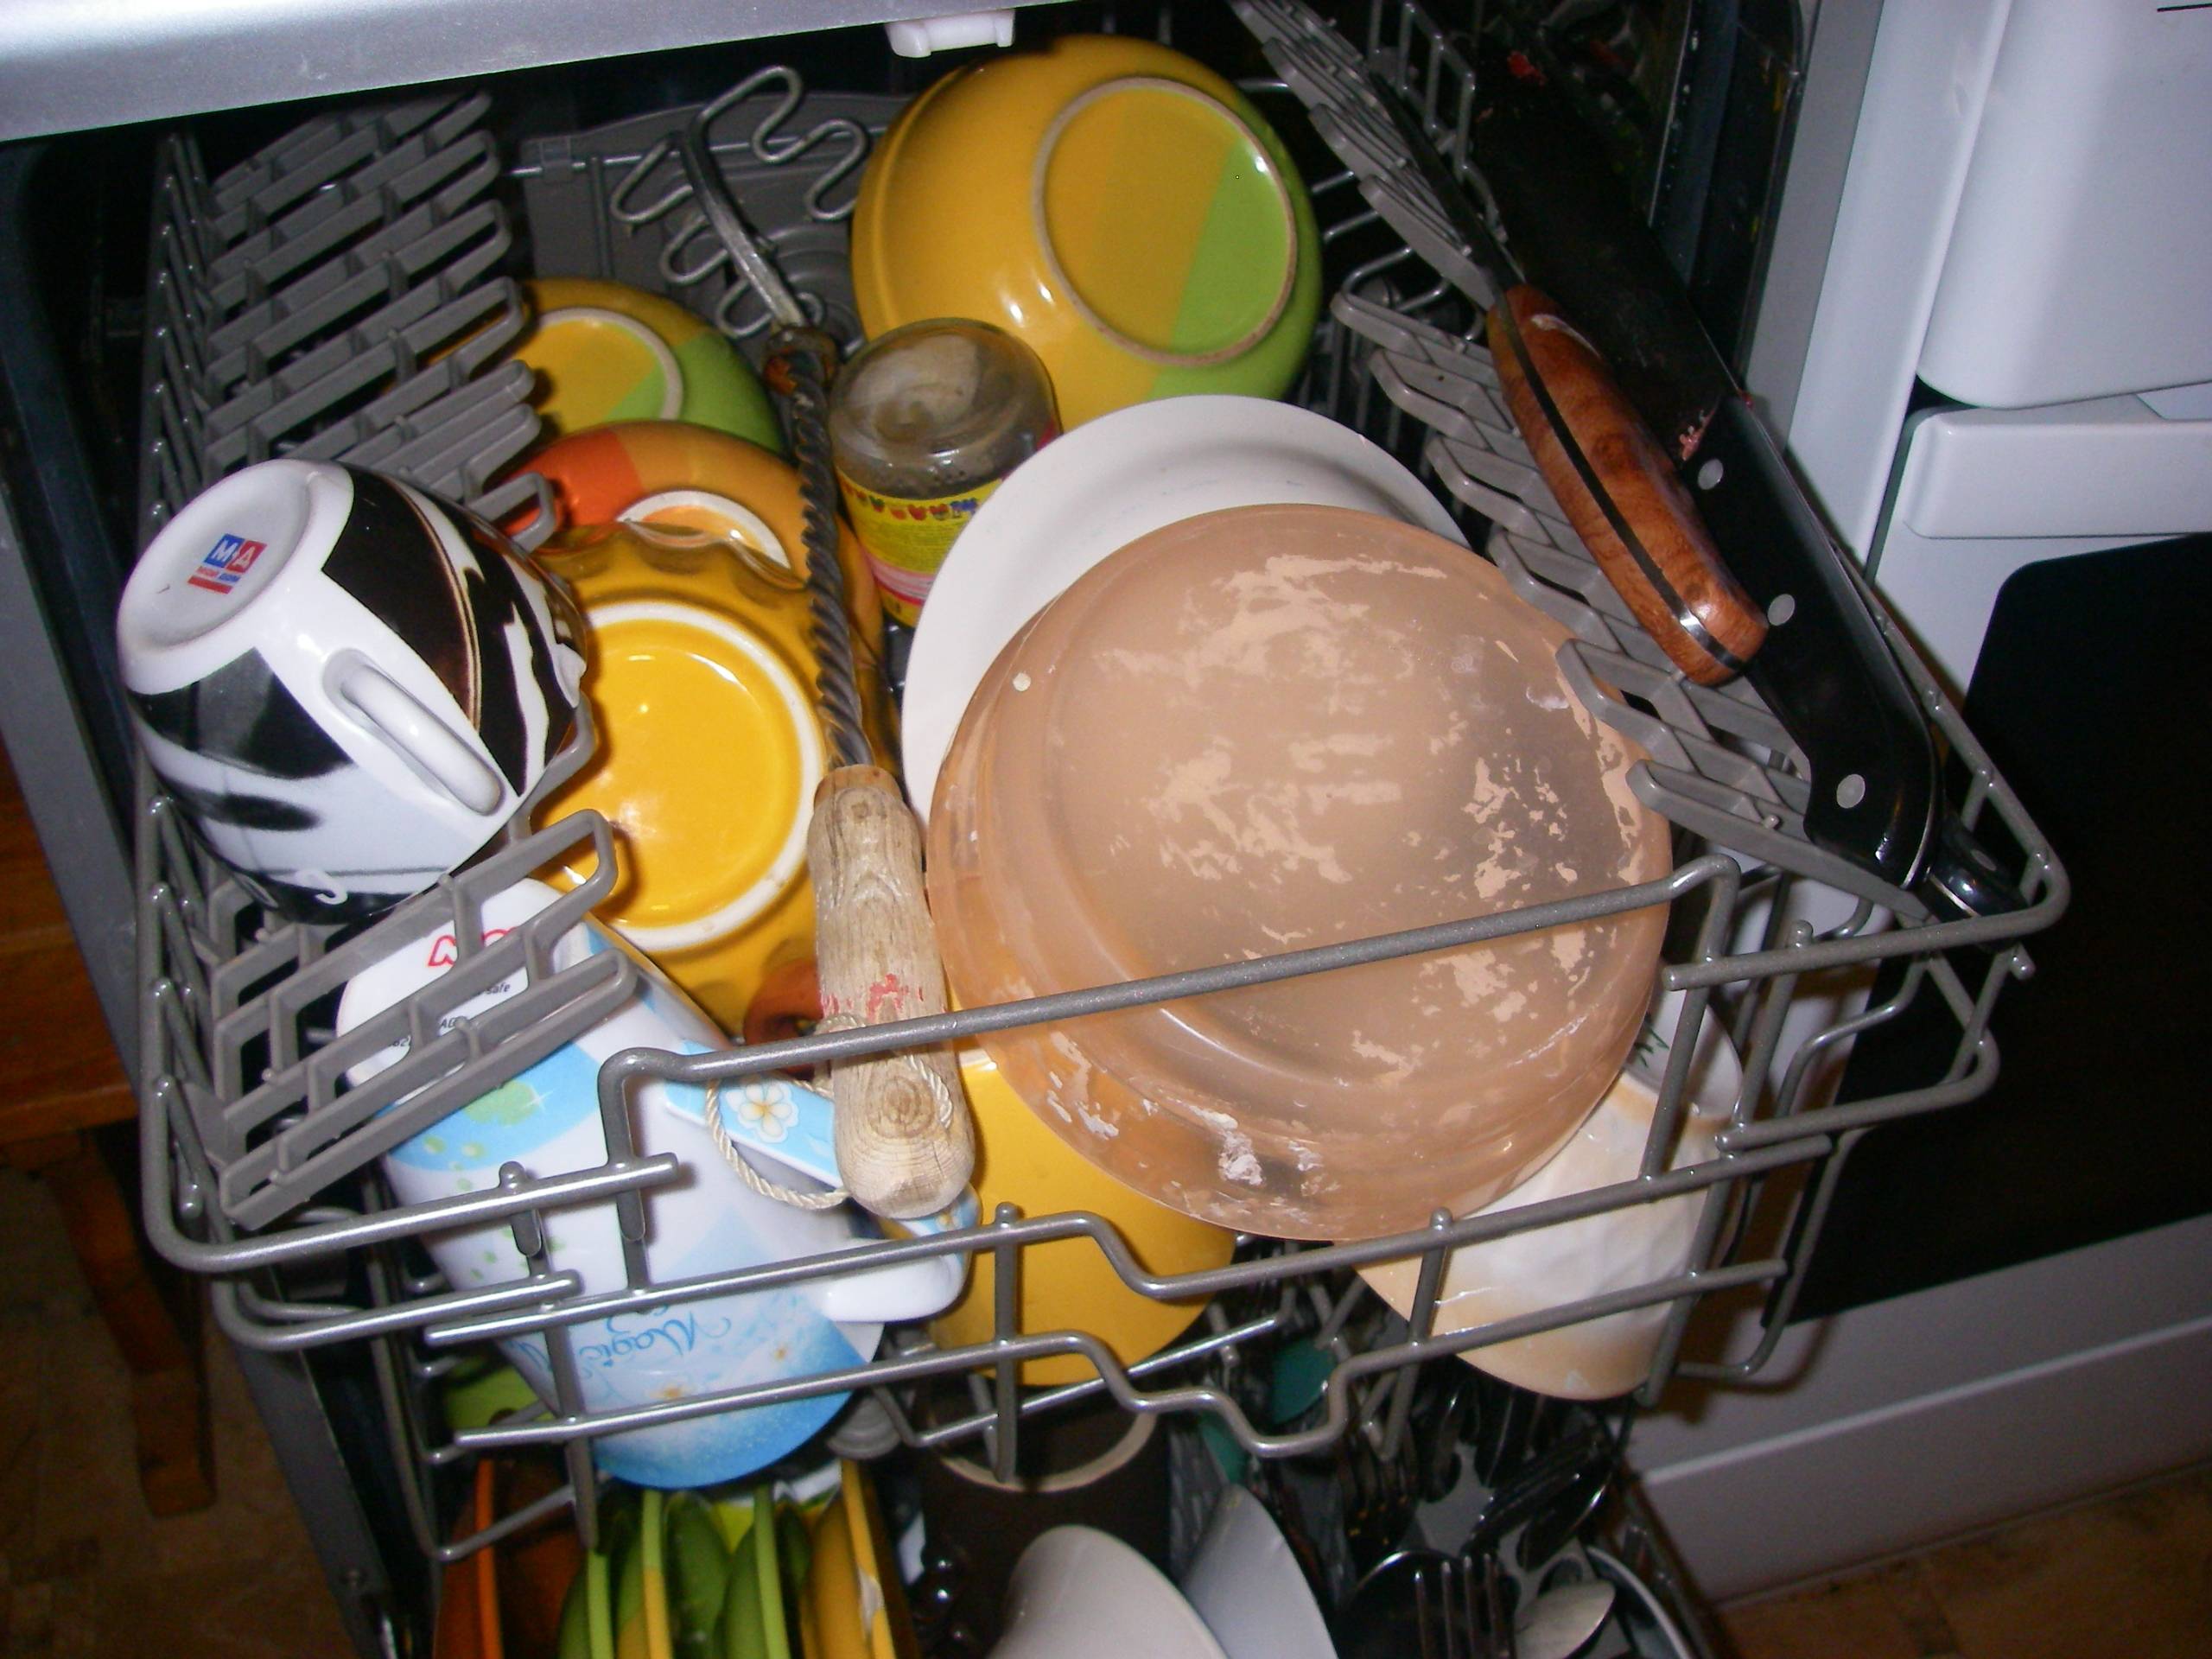 Эксплуатация посудомоечной машины, какую посуду в ней нельзя мыть